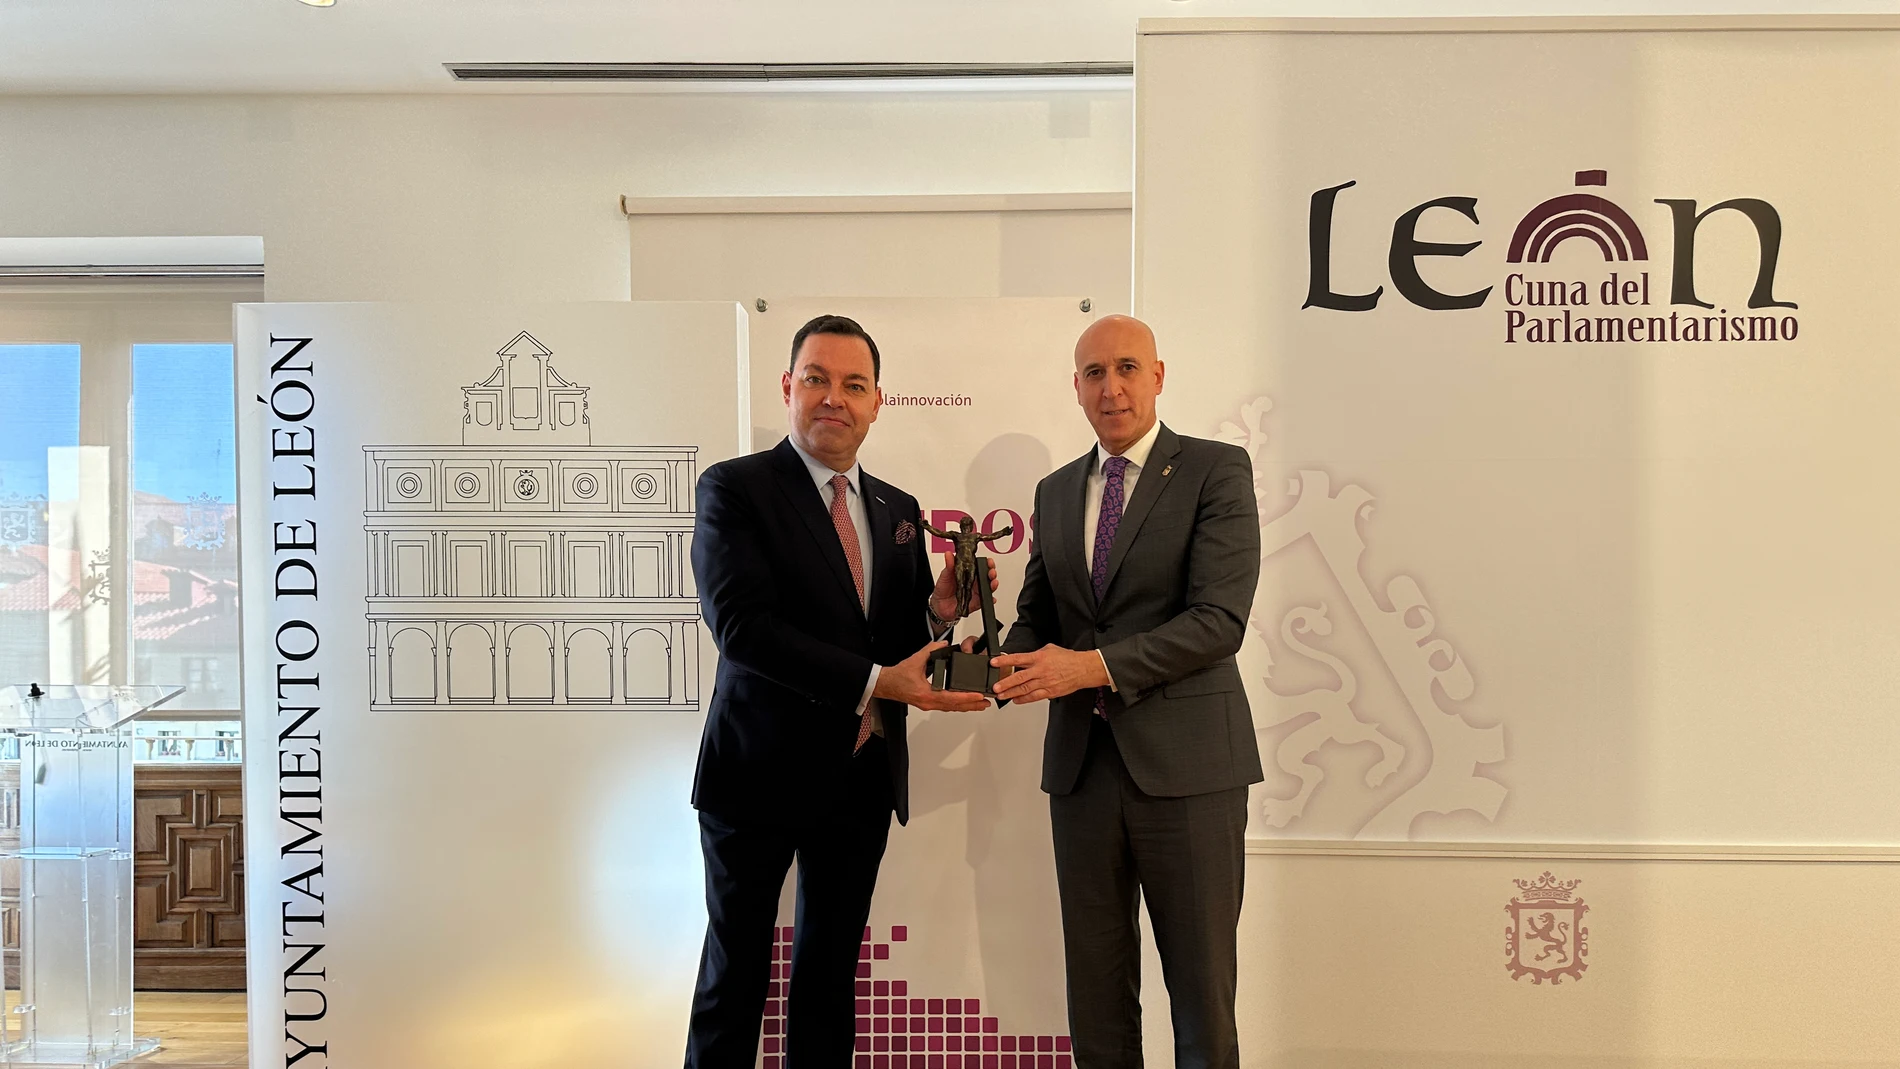 El alcalde de León, José Antonio Diez, acompañado del presidente de Fundos, José María Viejo, presentan los premios